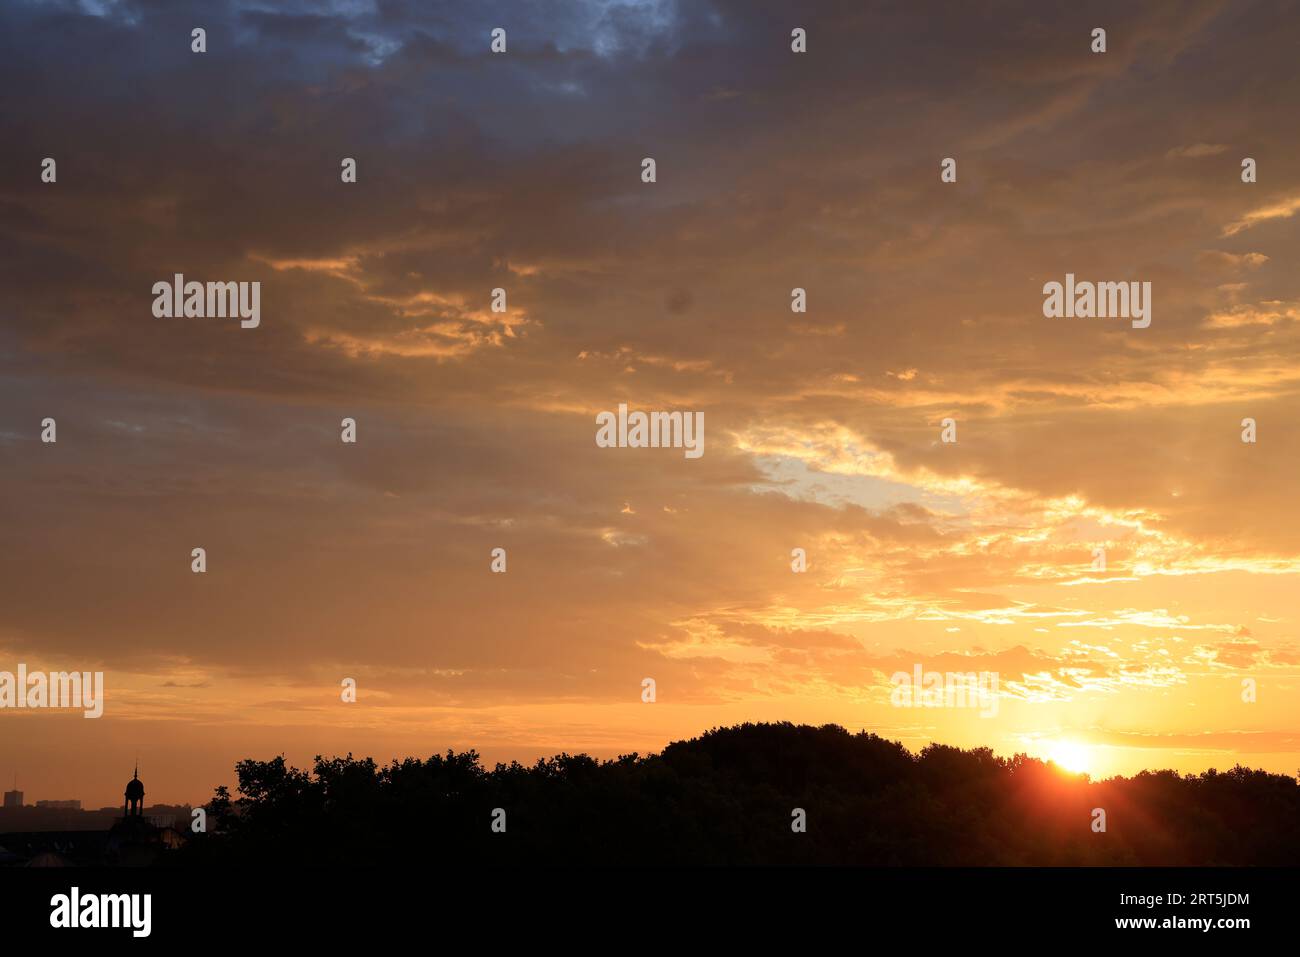 Sol naciente, amanecer en Burdeos. Burdeos, Gironda, Francia, Europa. Foto de stock